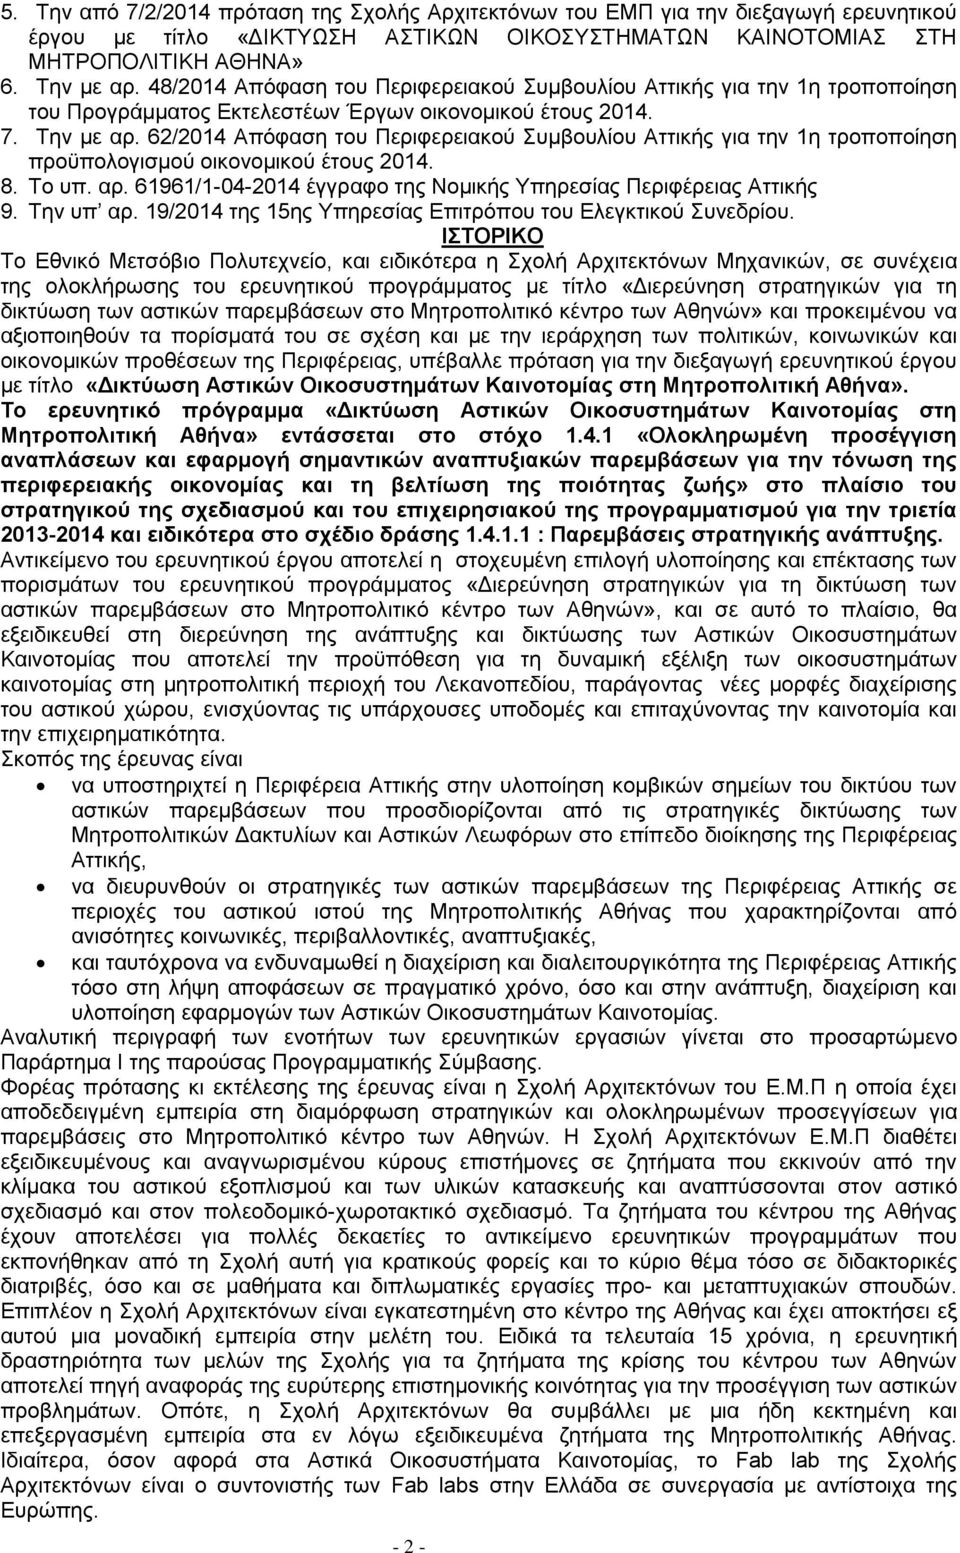 62/2014 Απόφαση του Περιφερειακού Συμβουλίου Αττικής για την 1η τροποποίηση προϋπολογισμού οικονομικού έτους 2014. 8. Το υπ. αρ. 61961/1-04-2014 έγγραφο της Νομικής Υπηρεσίας Περιφέρειας Αττικής 9.